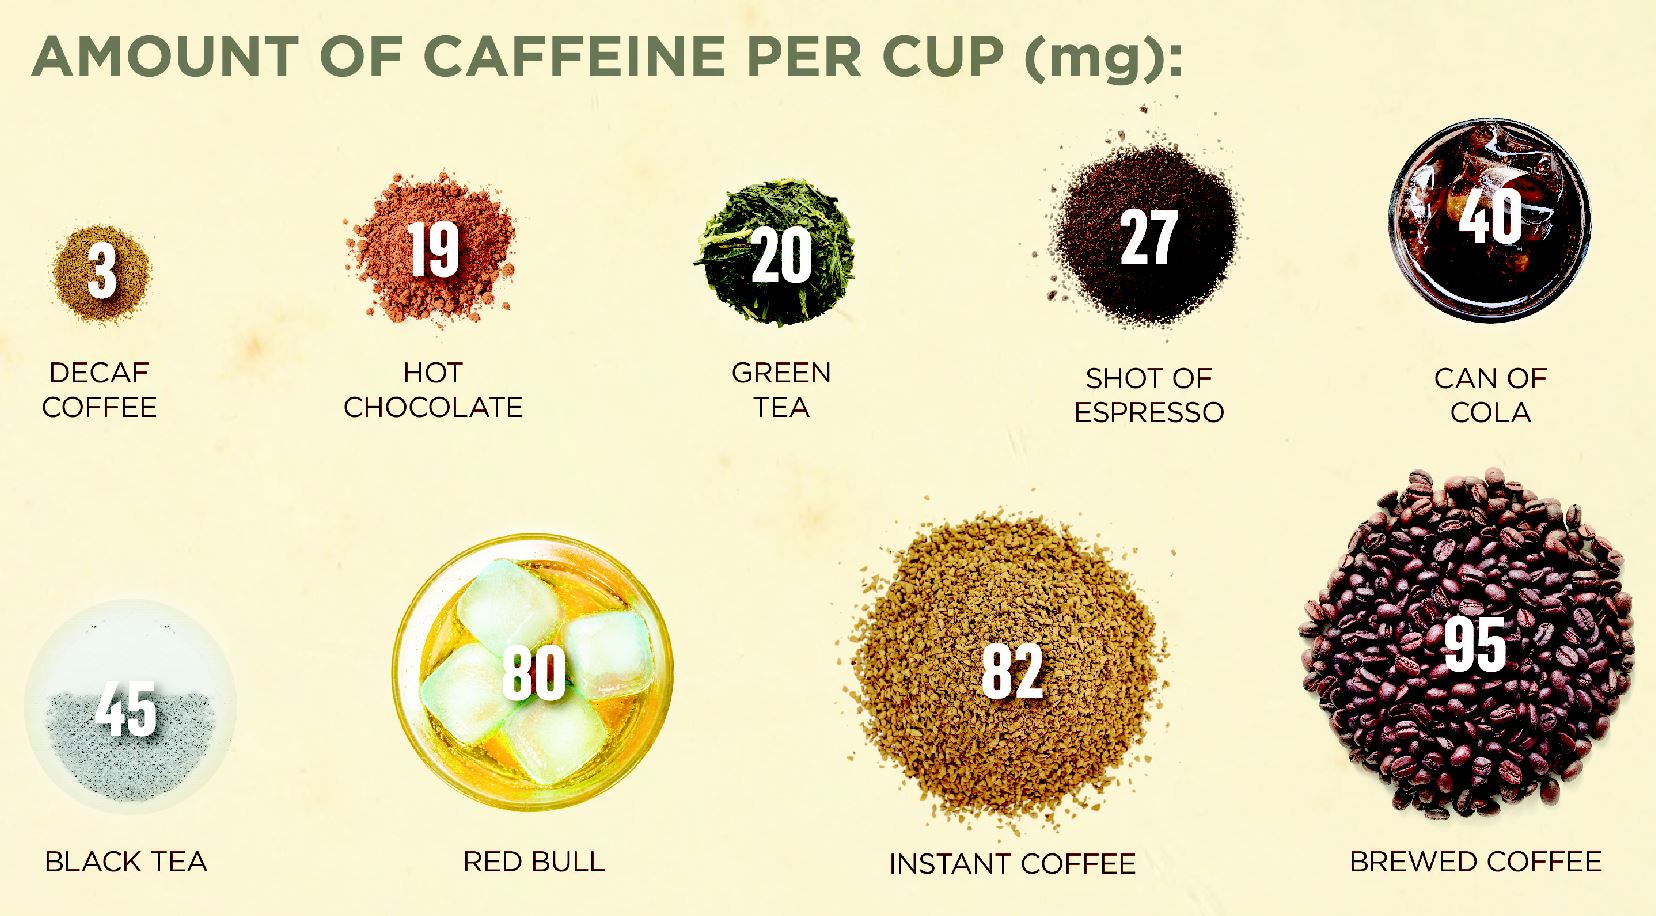 Где кофеина больше в кофе или энергетике. Кофеин в кофе. Чаи по содержанию кофеина. Пуэр кофеин. Кофеин в чае.